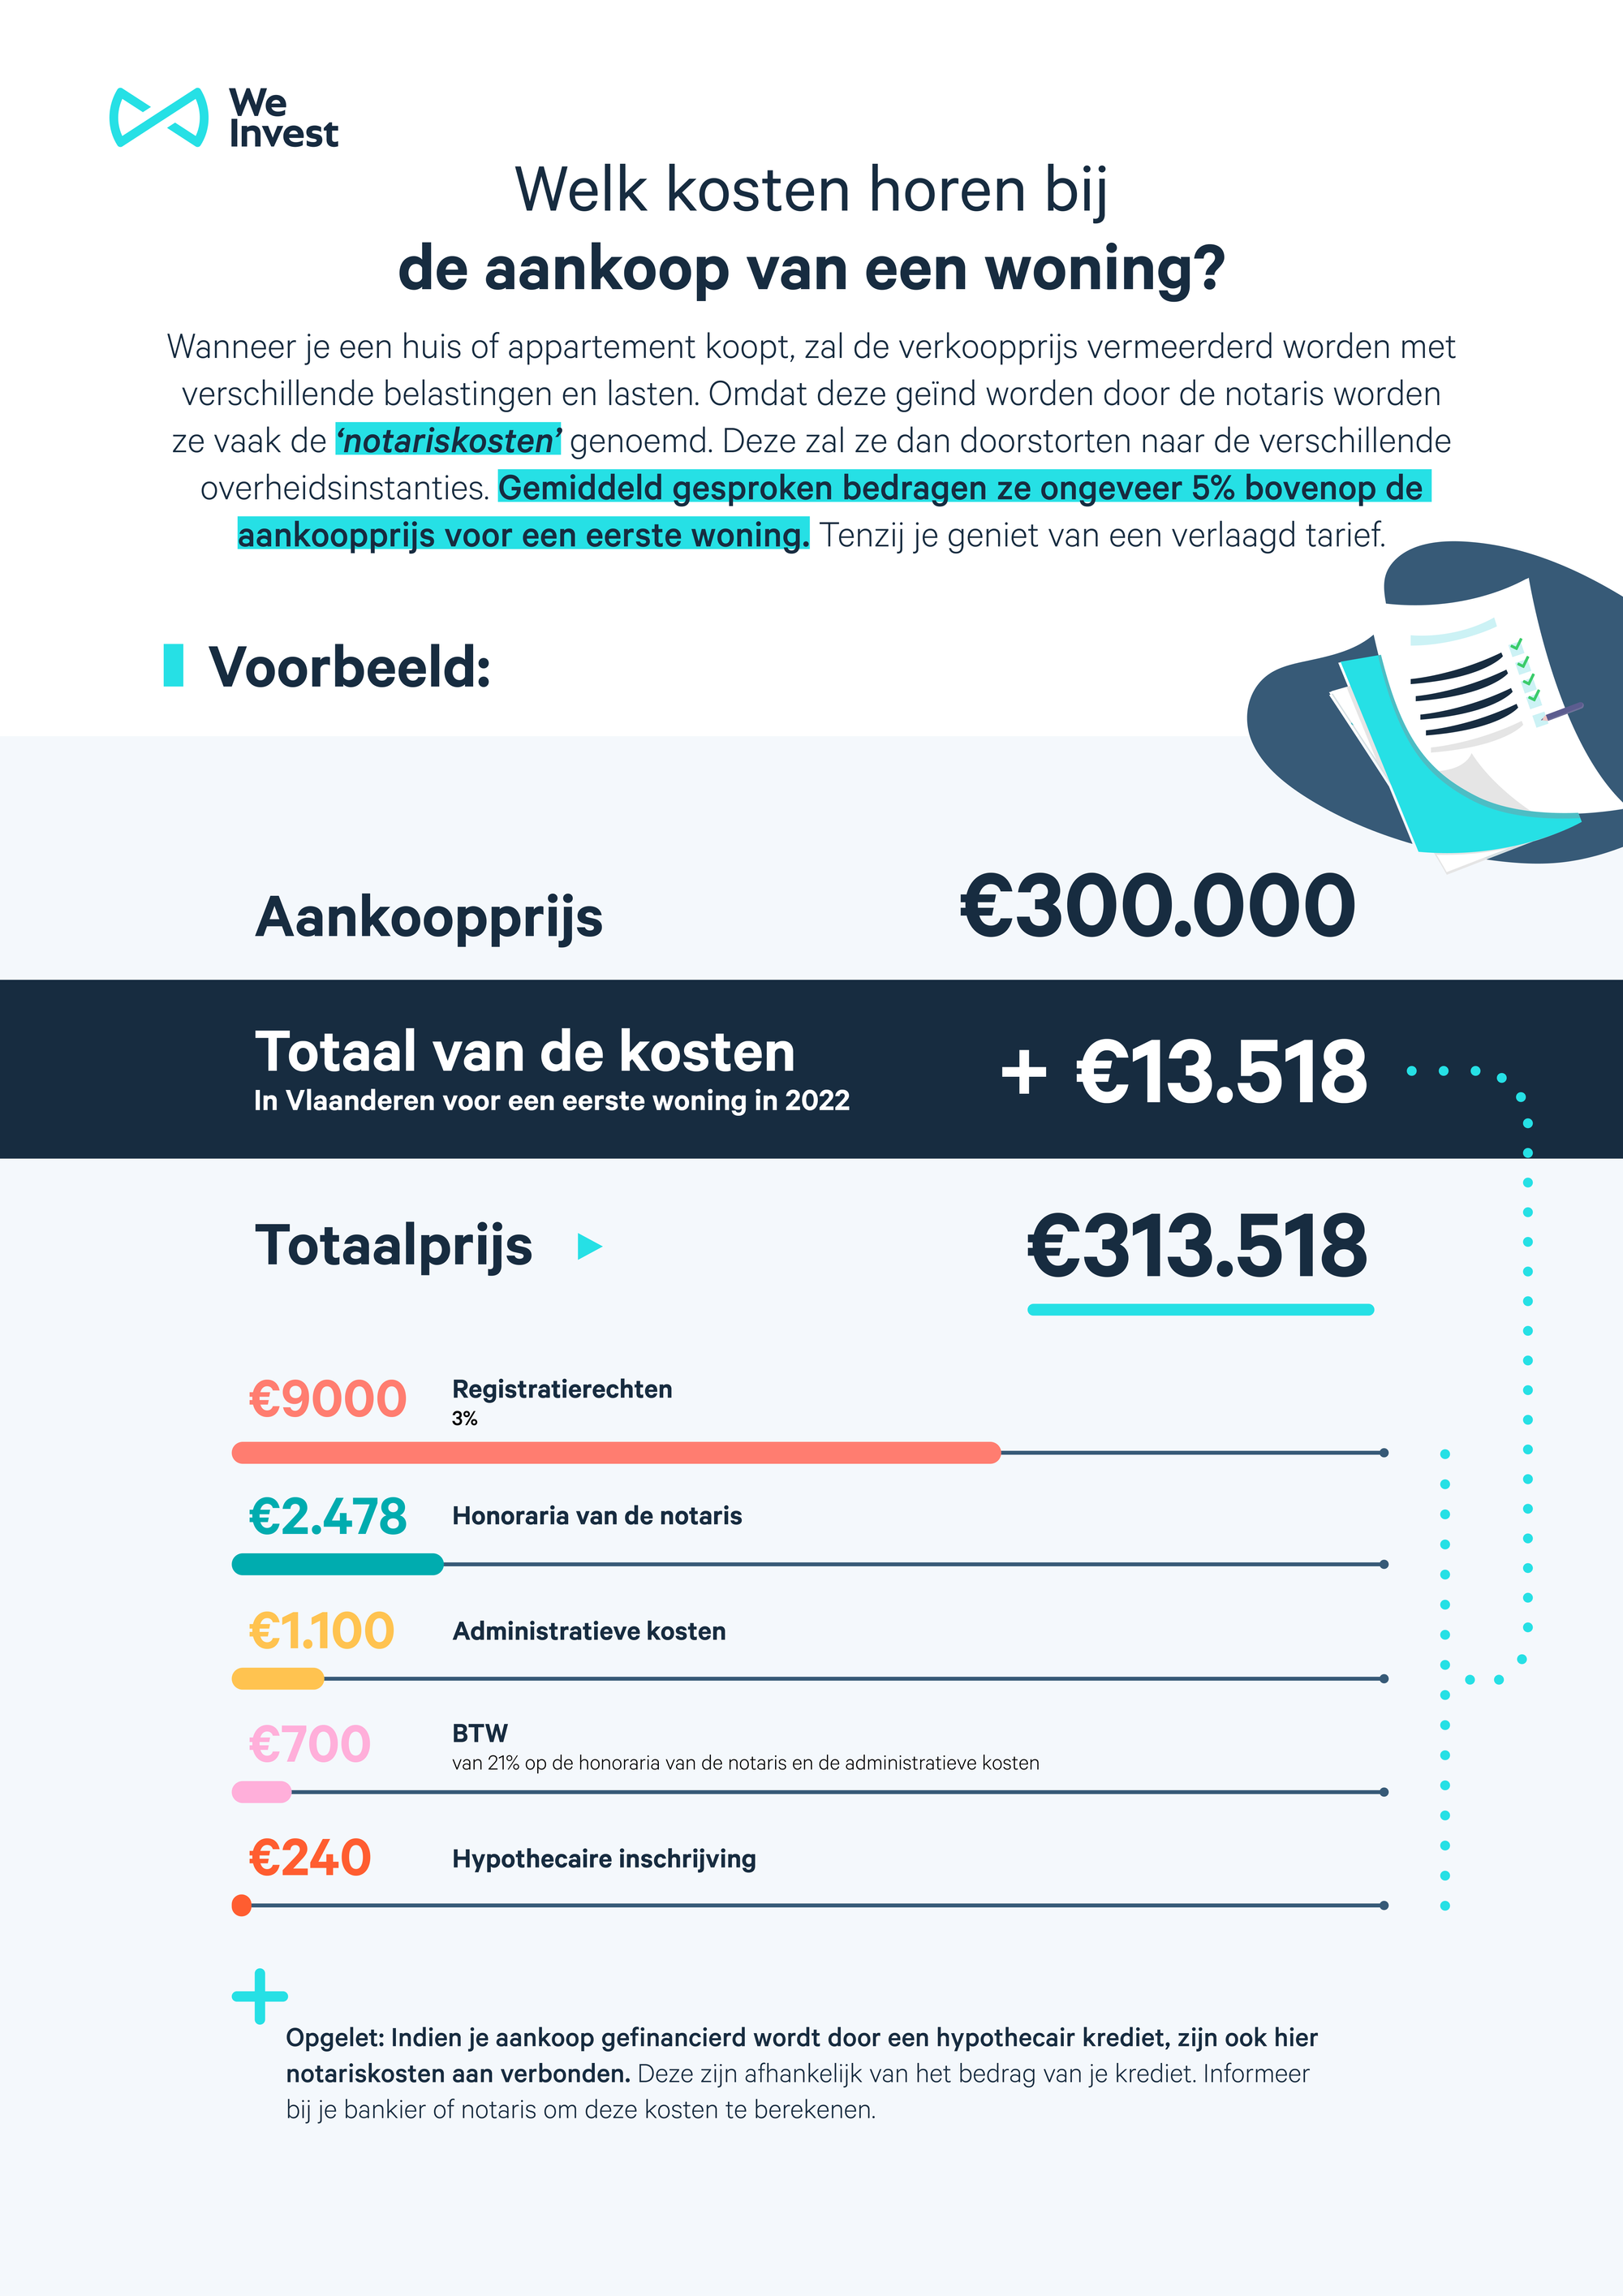 Een overzicht van alle bijkomende kosten voor een woning van €300.000